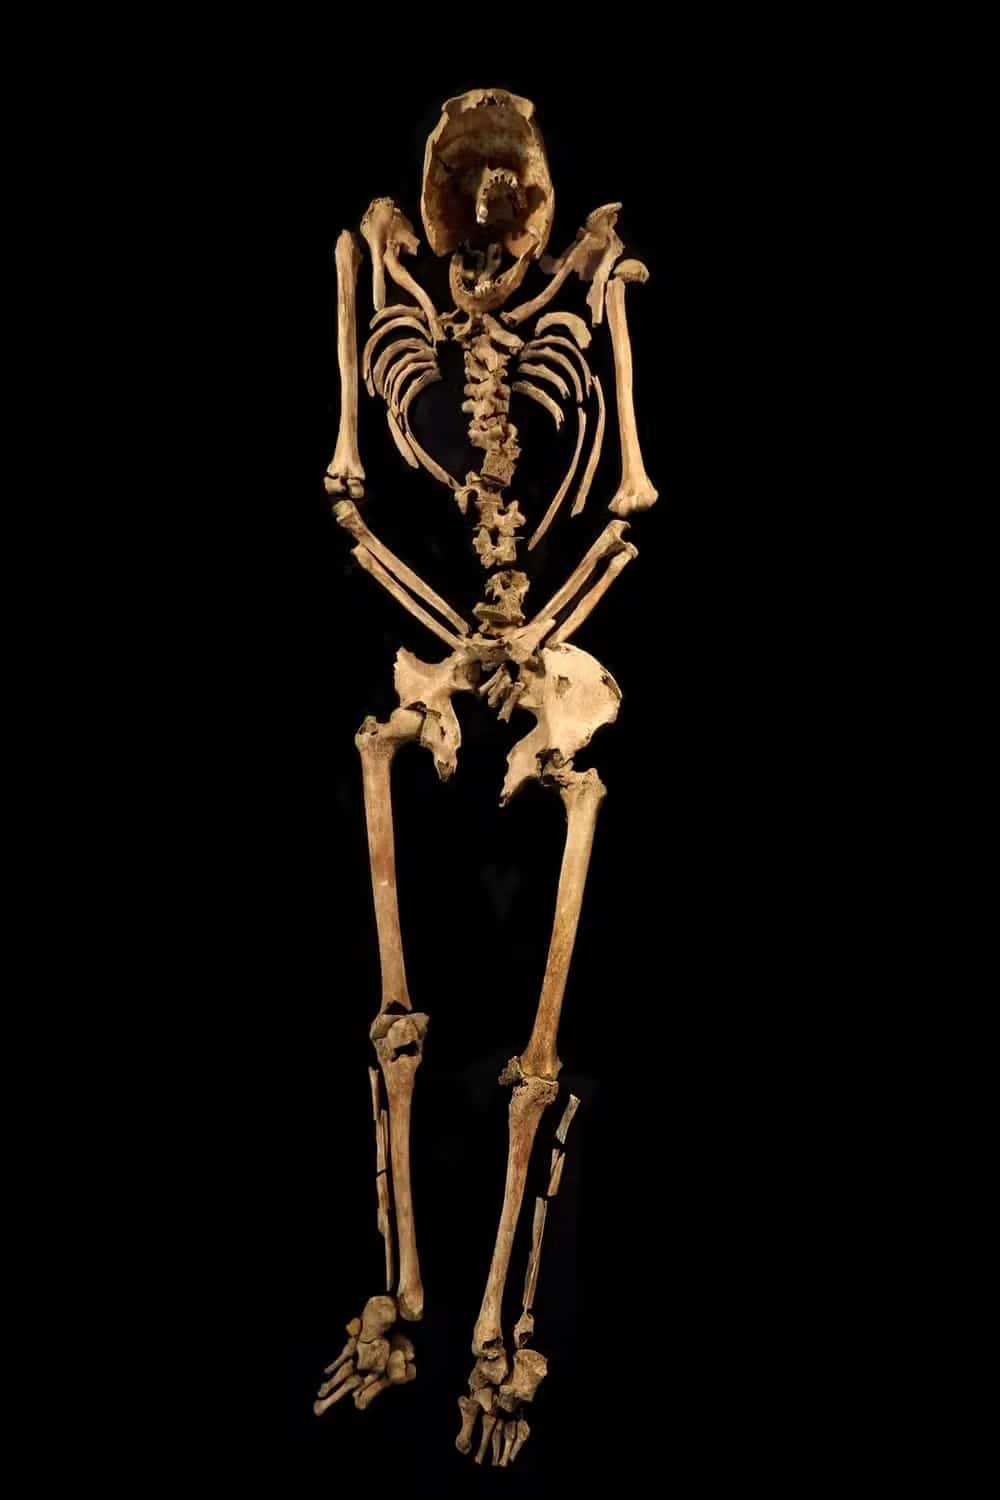 pensarcontemporaneo.com - Artista forense recria rosto de escravizado crucificado pelo Império Romano há 2 mil anos; veja resultado